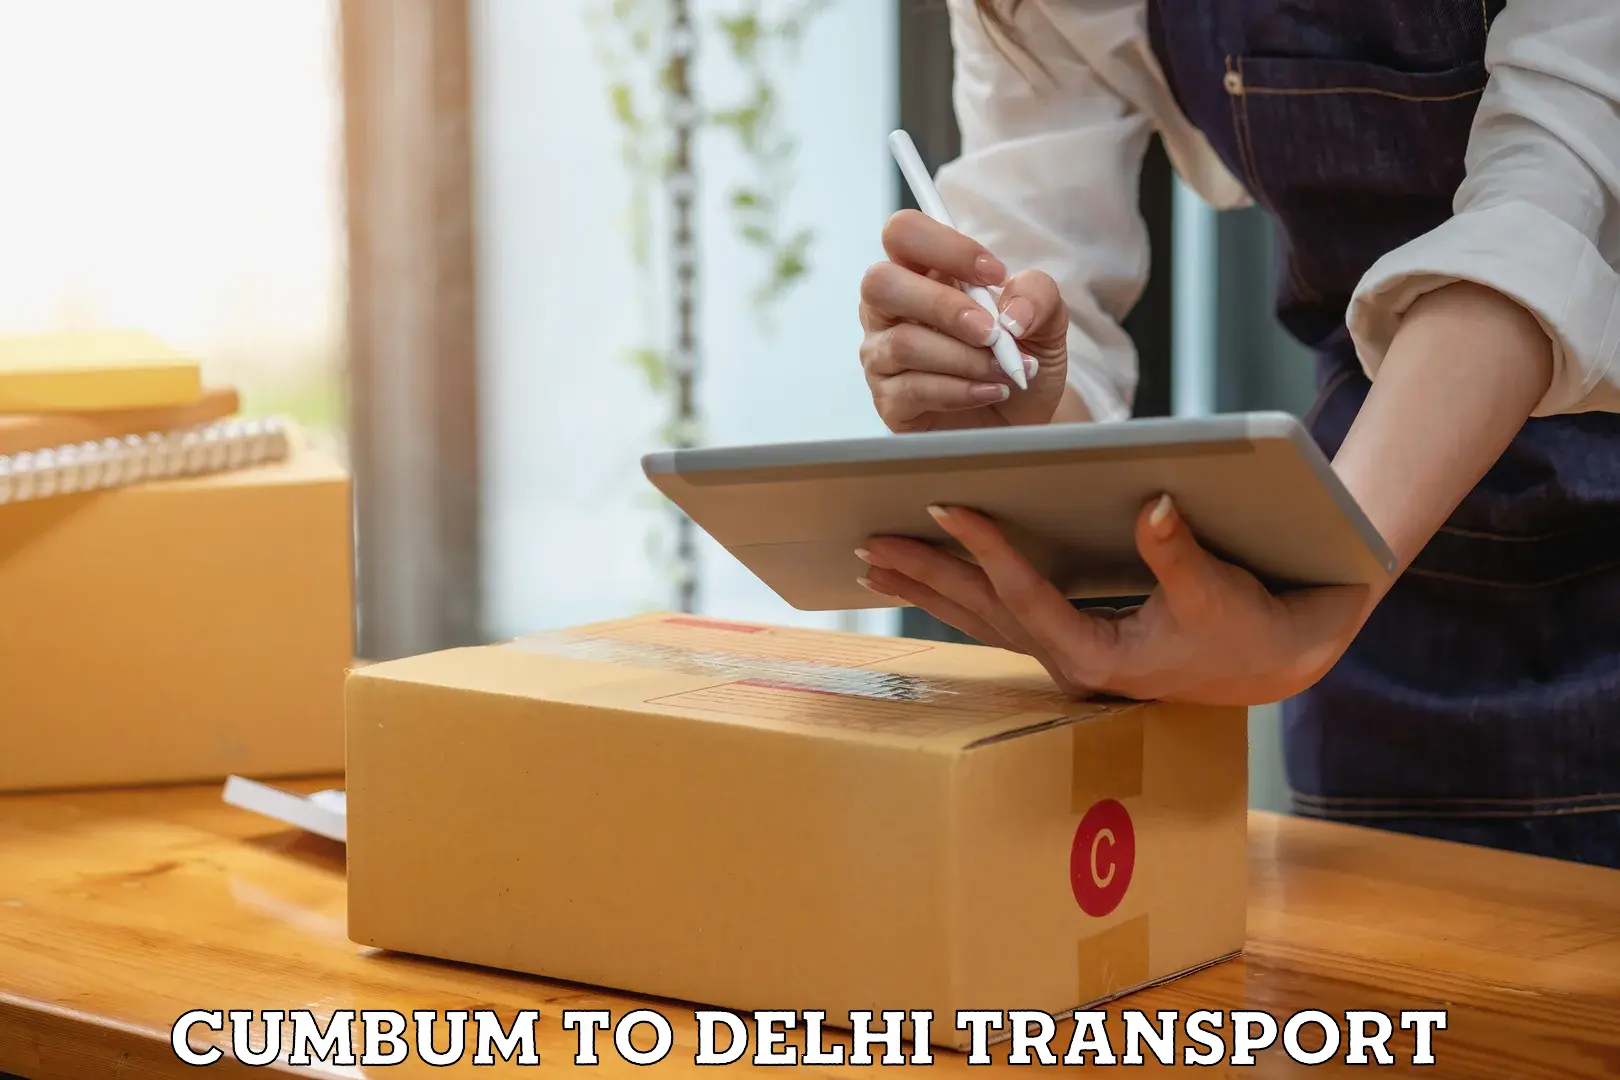 Commercial transport service Cumbum to Delhi